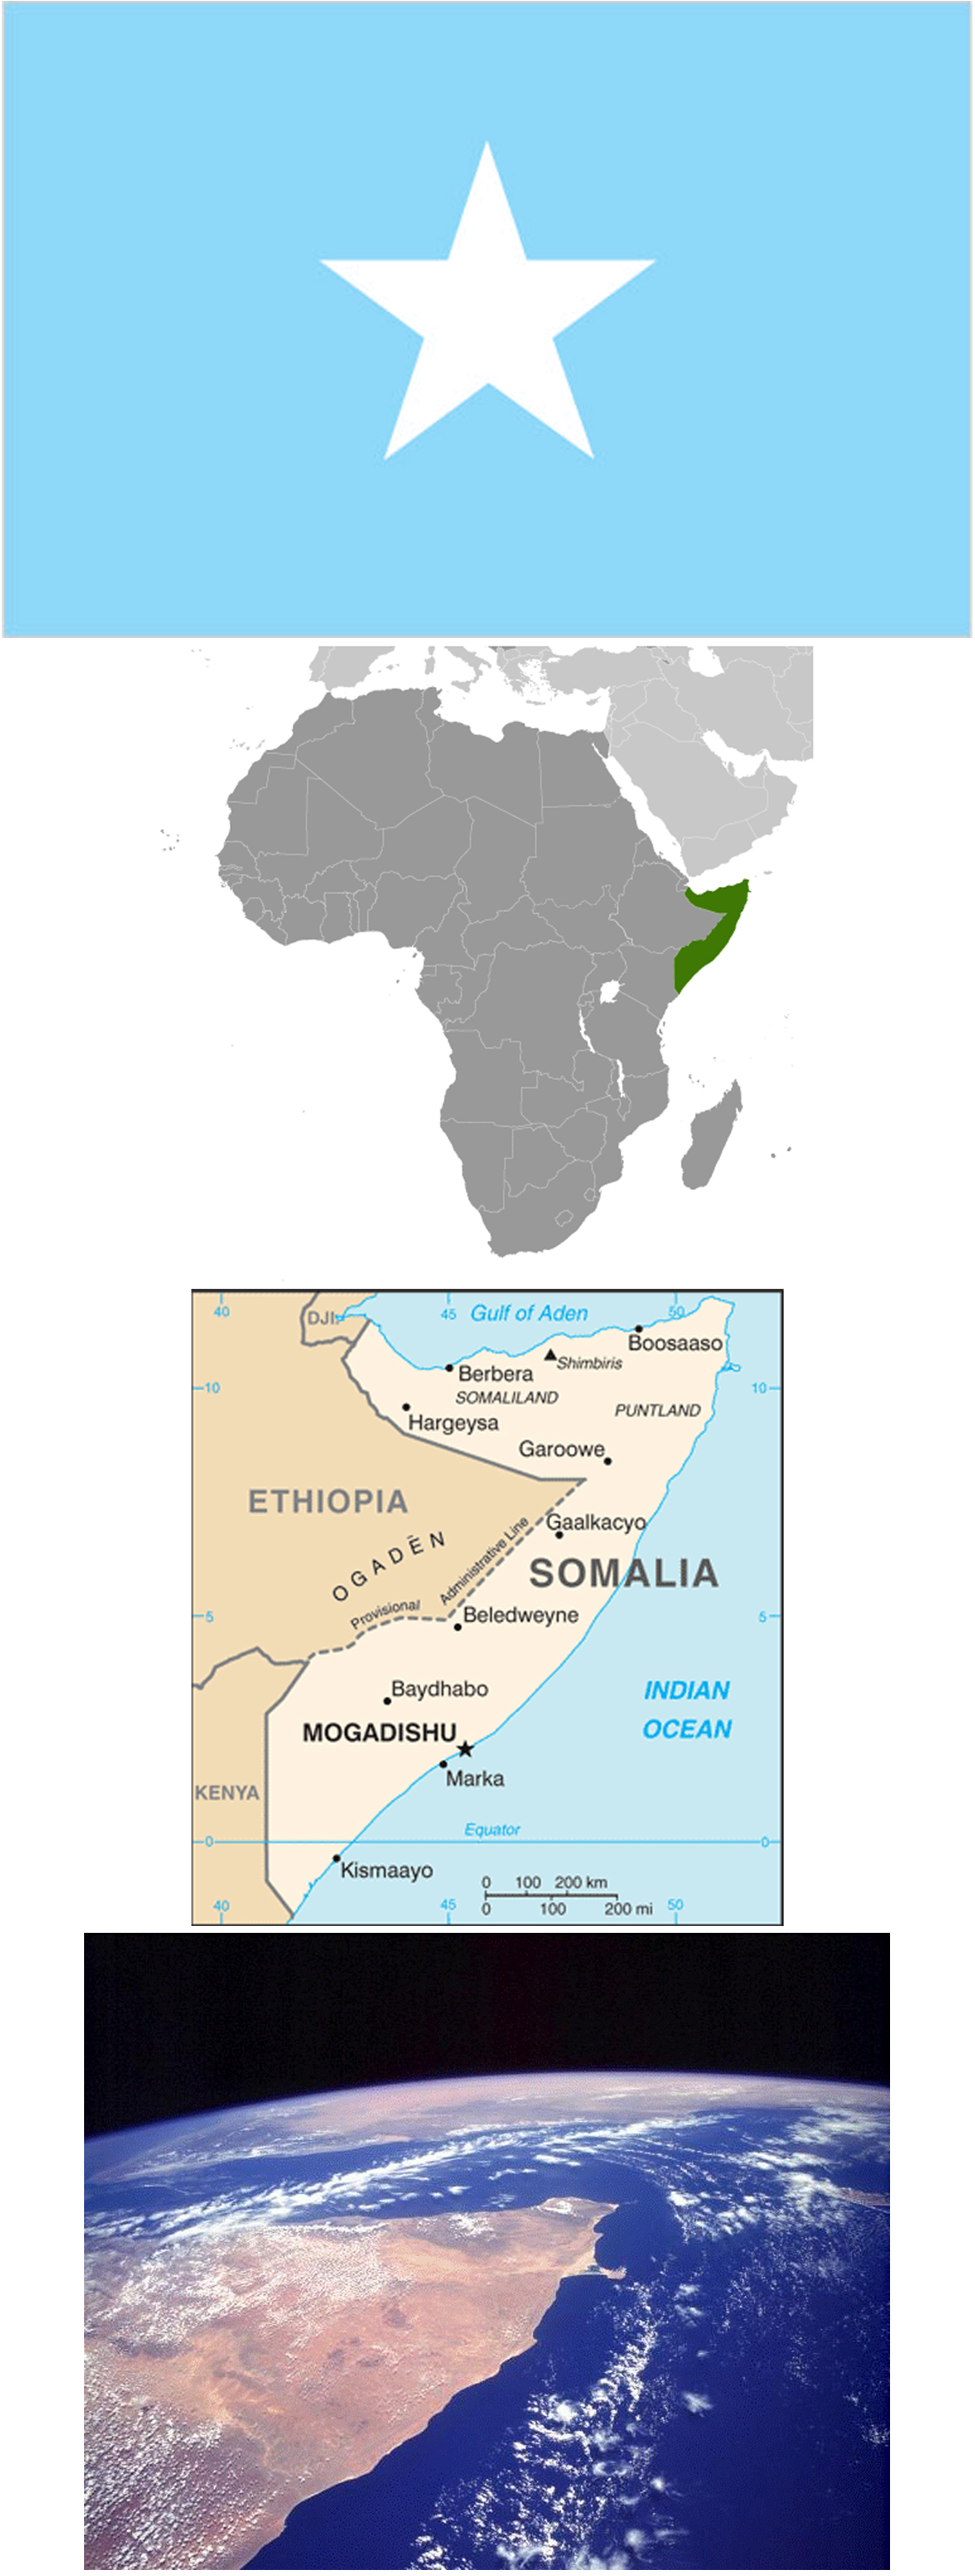 Somalia News